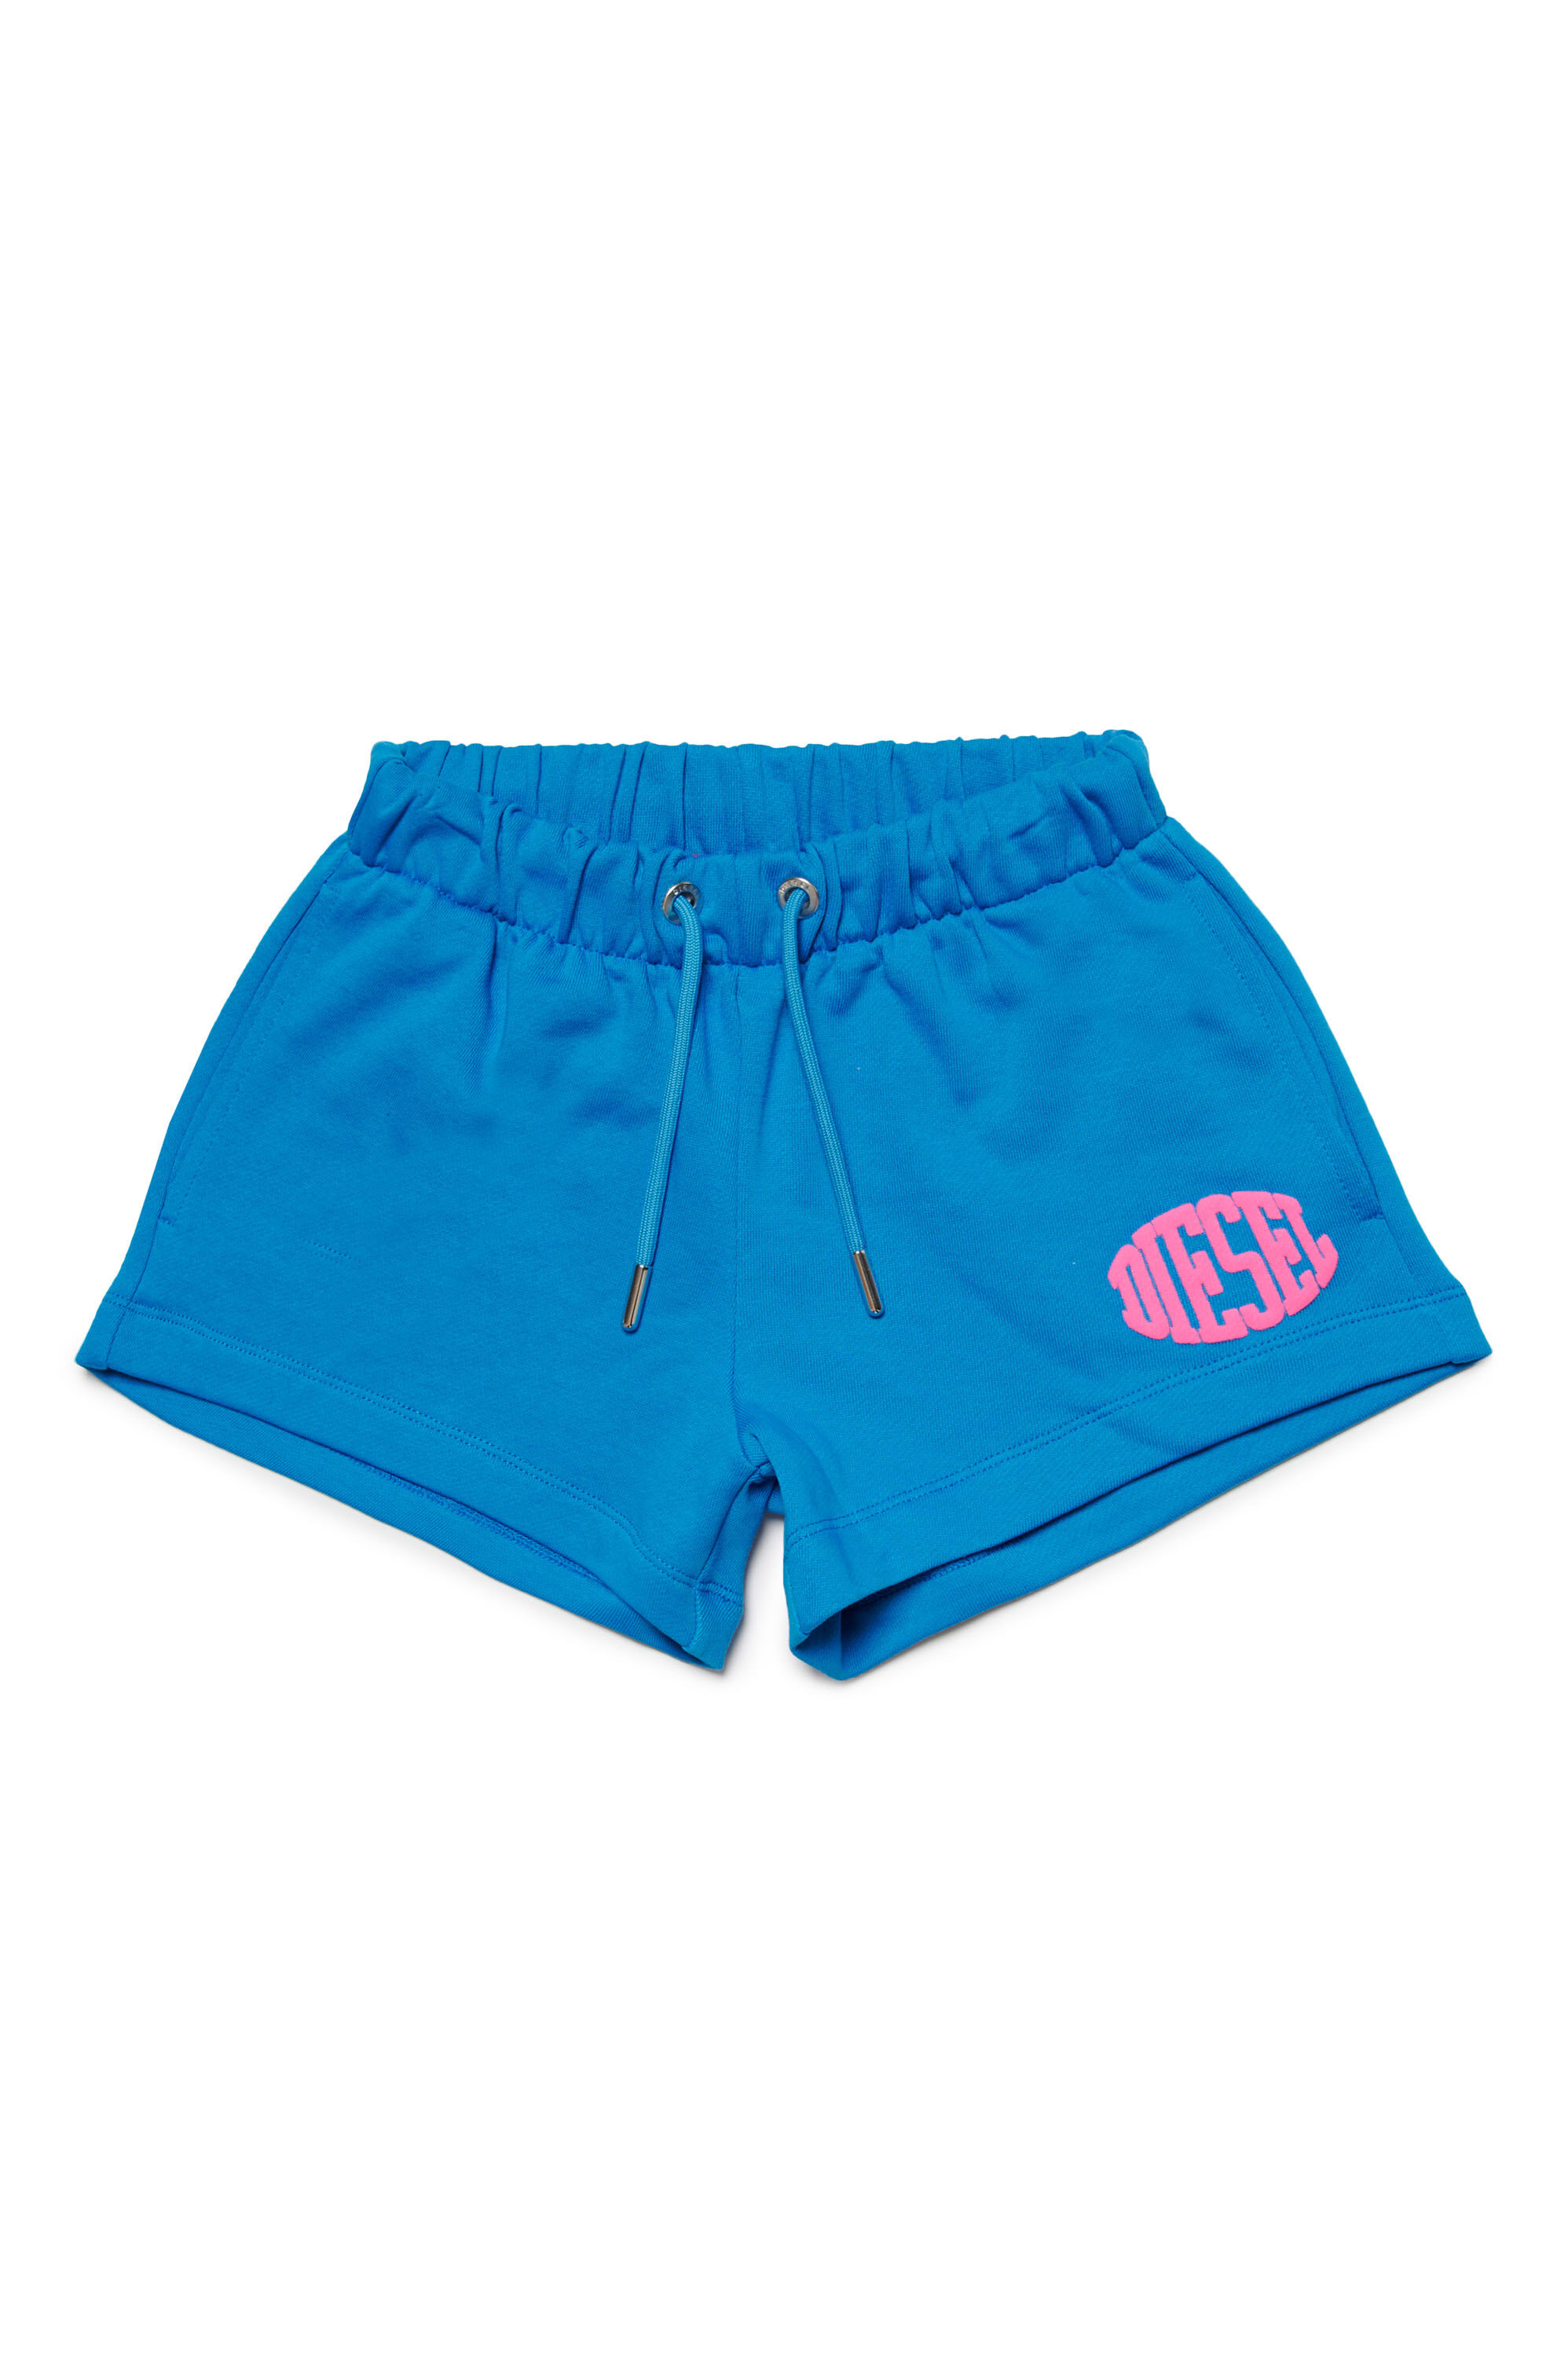 Diesel - PAGLIFE, Mujer Pantalones cortos deportivos con logotipo Oval D acolchado in Azul marino - Image 1